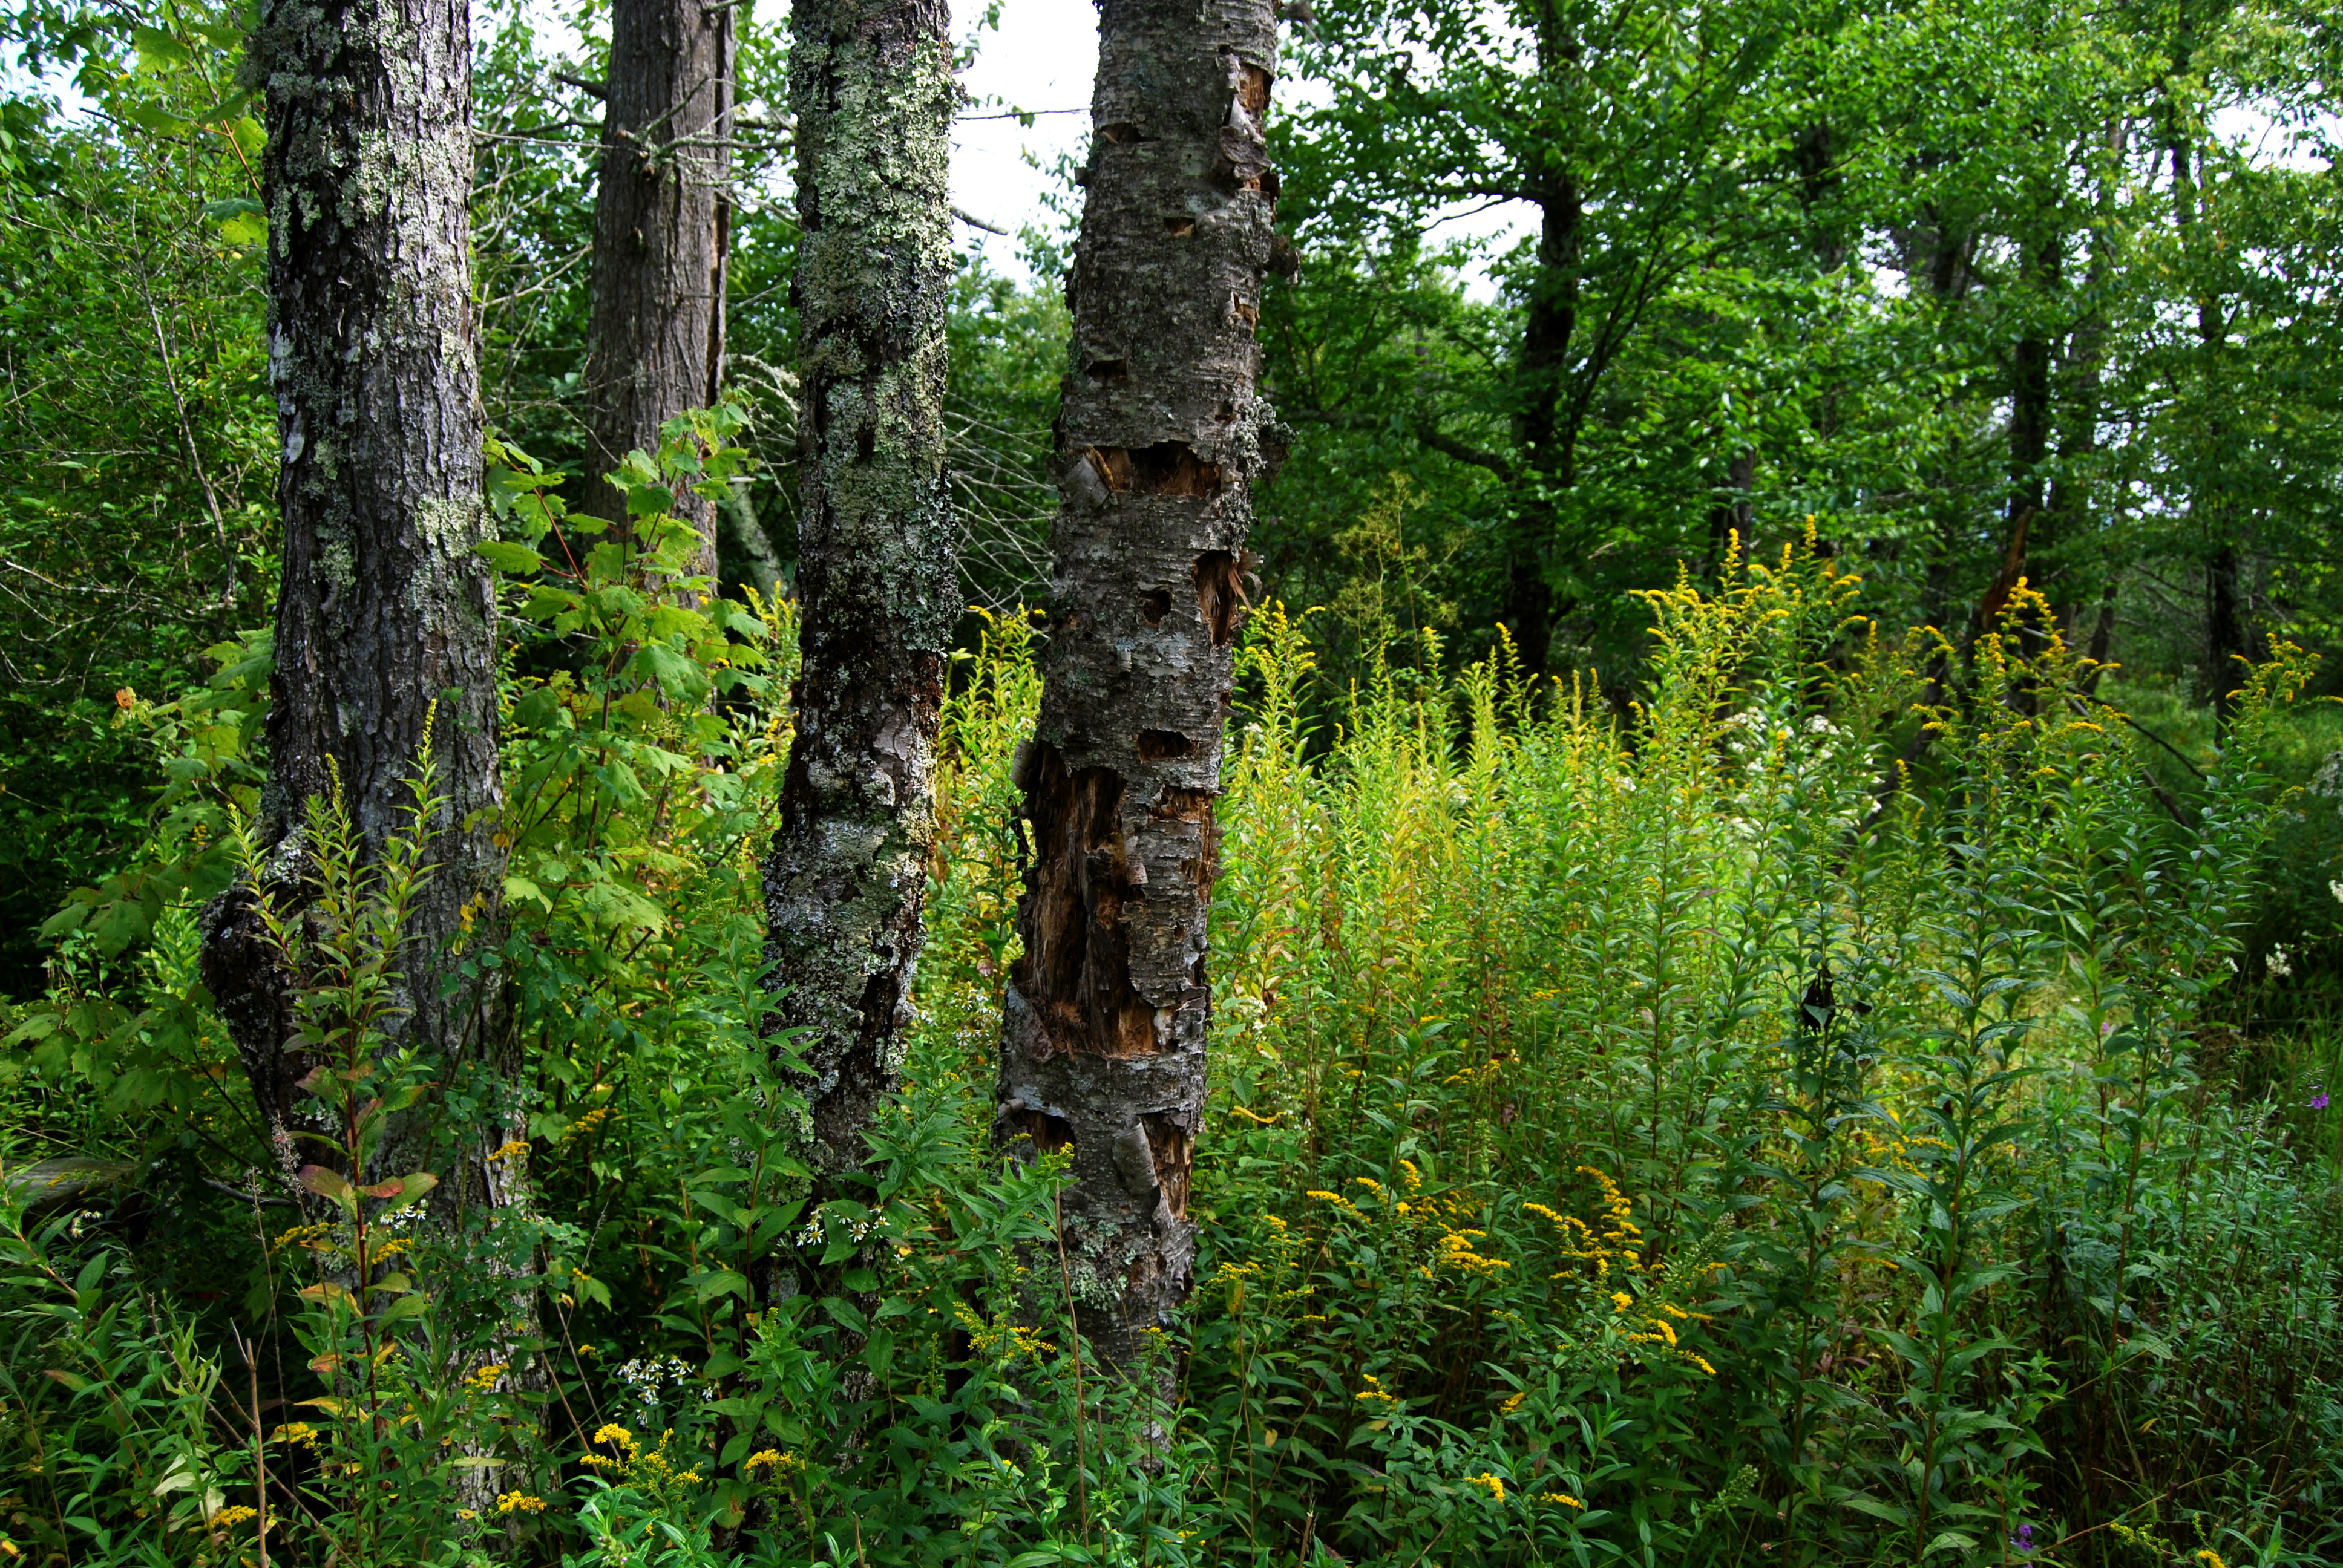 File:Flickr - ggallice - Bog forest, Cranberry Glades.jpg ...